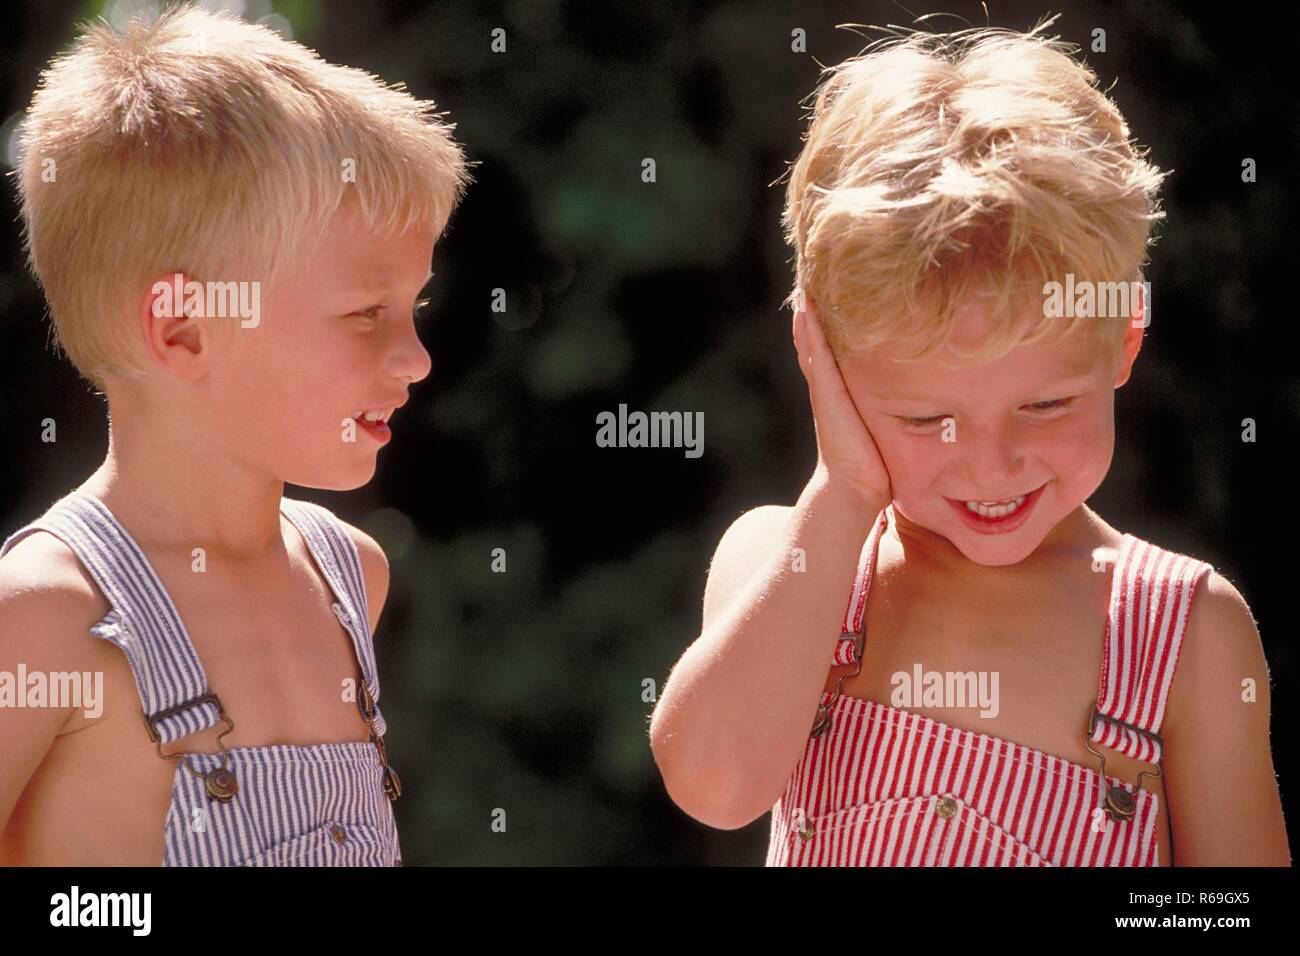 Portrait, Nahaufnahme, zwei 4 Jahre alte Zwillings-Jungen mit kurzen blonden Haaren bekleidet mit blau und rot-weiss gestreiften Latzhosen unterhalten sich Stock Photo